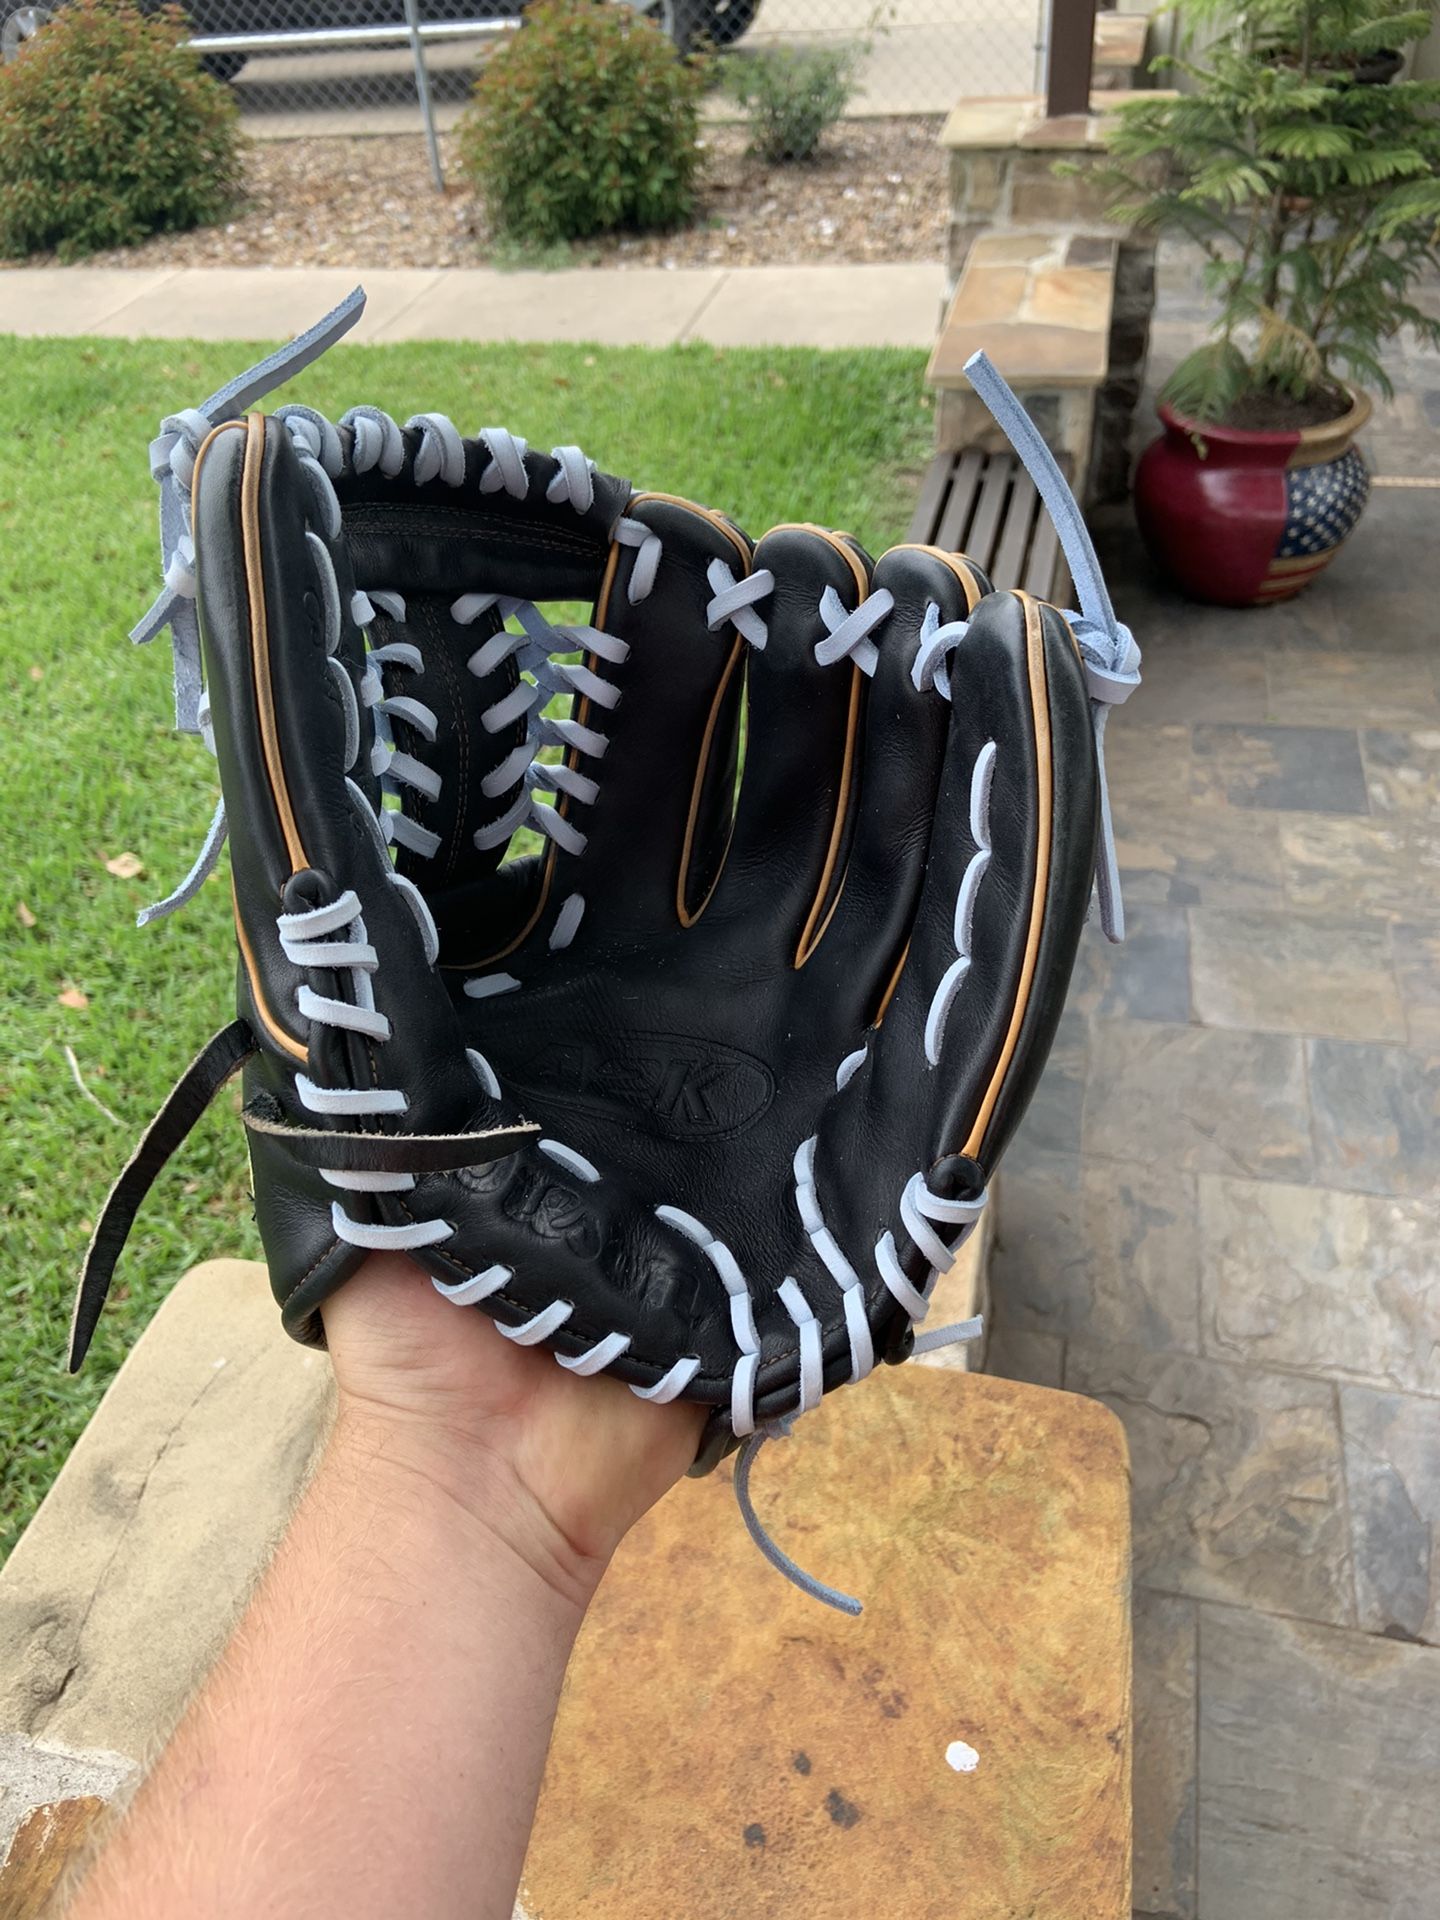 Wilson A2K 12 inch baseball glove